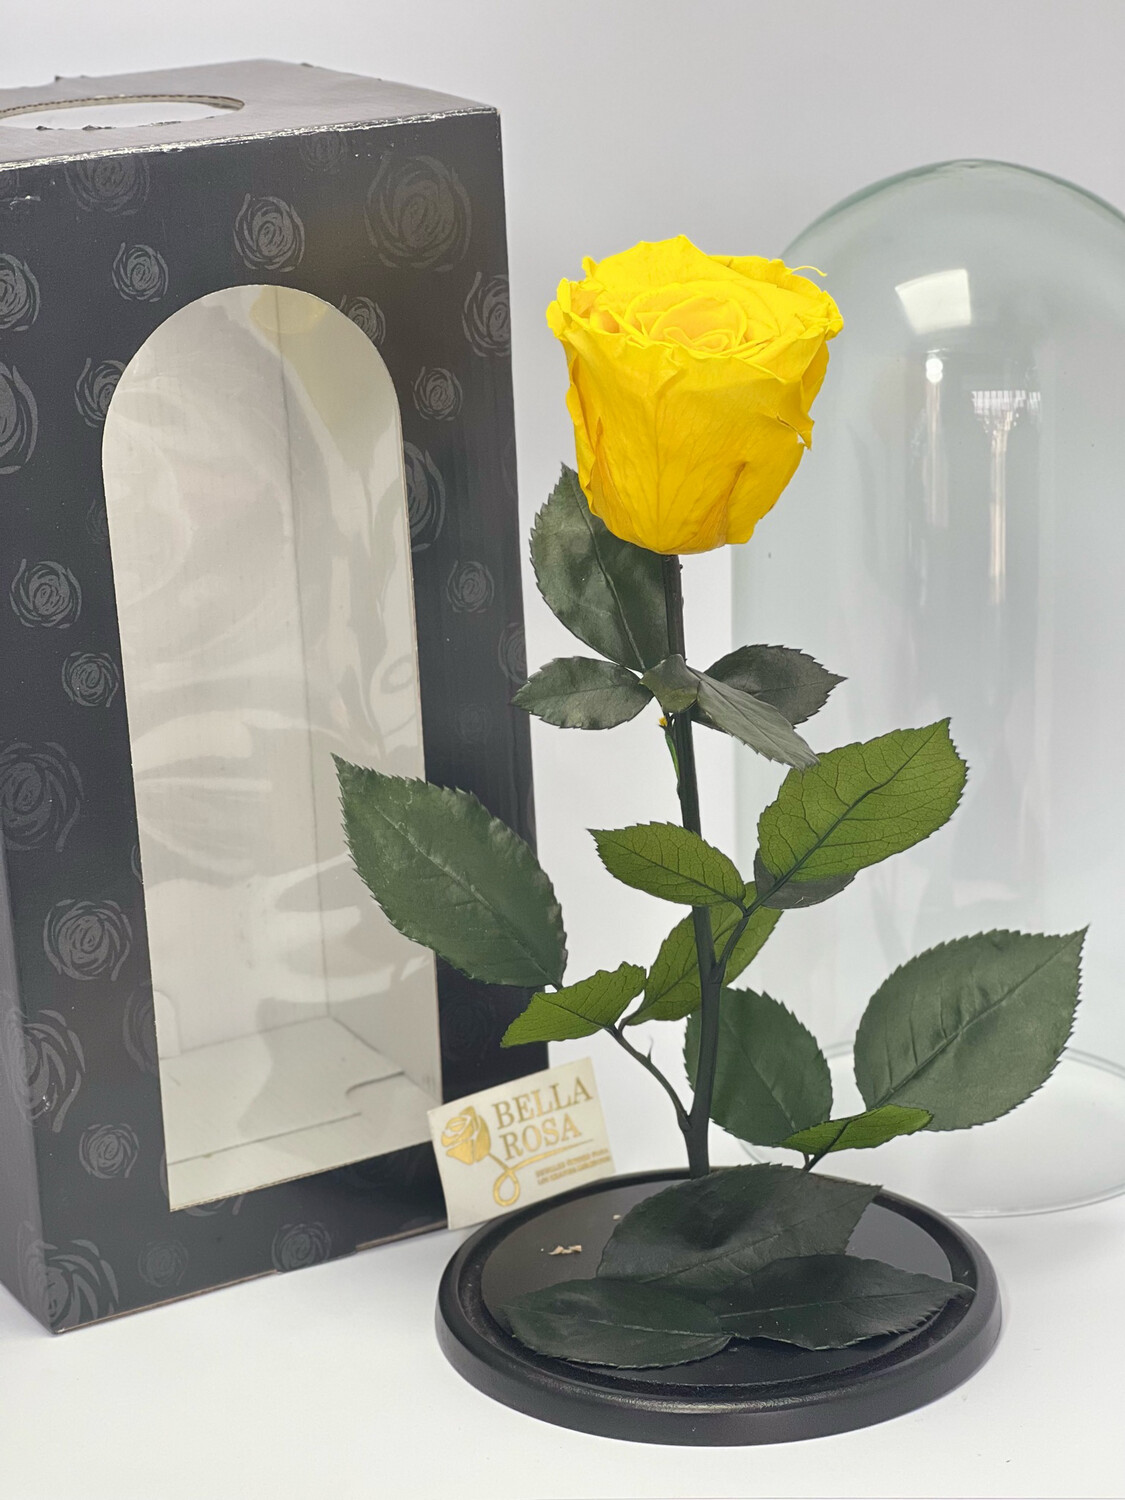 Cúpula de cristal de 27 cm de alto con una rosa preservada